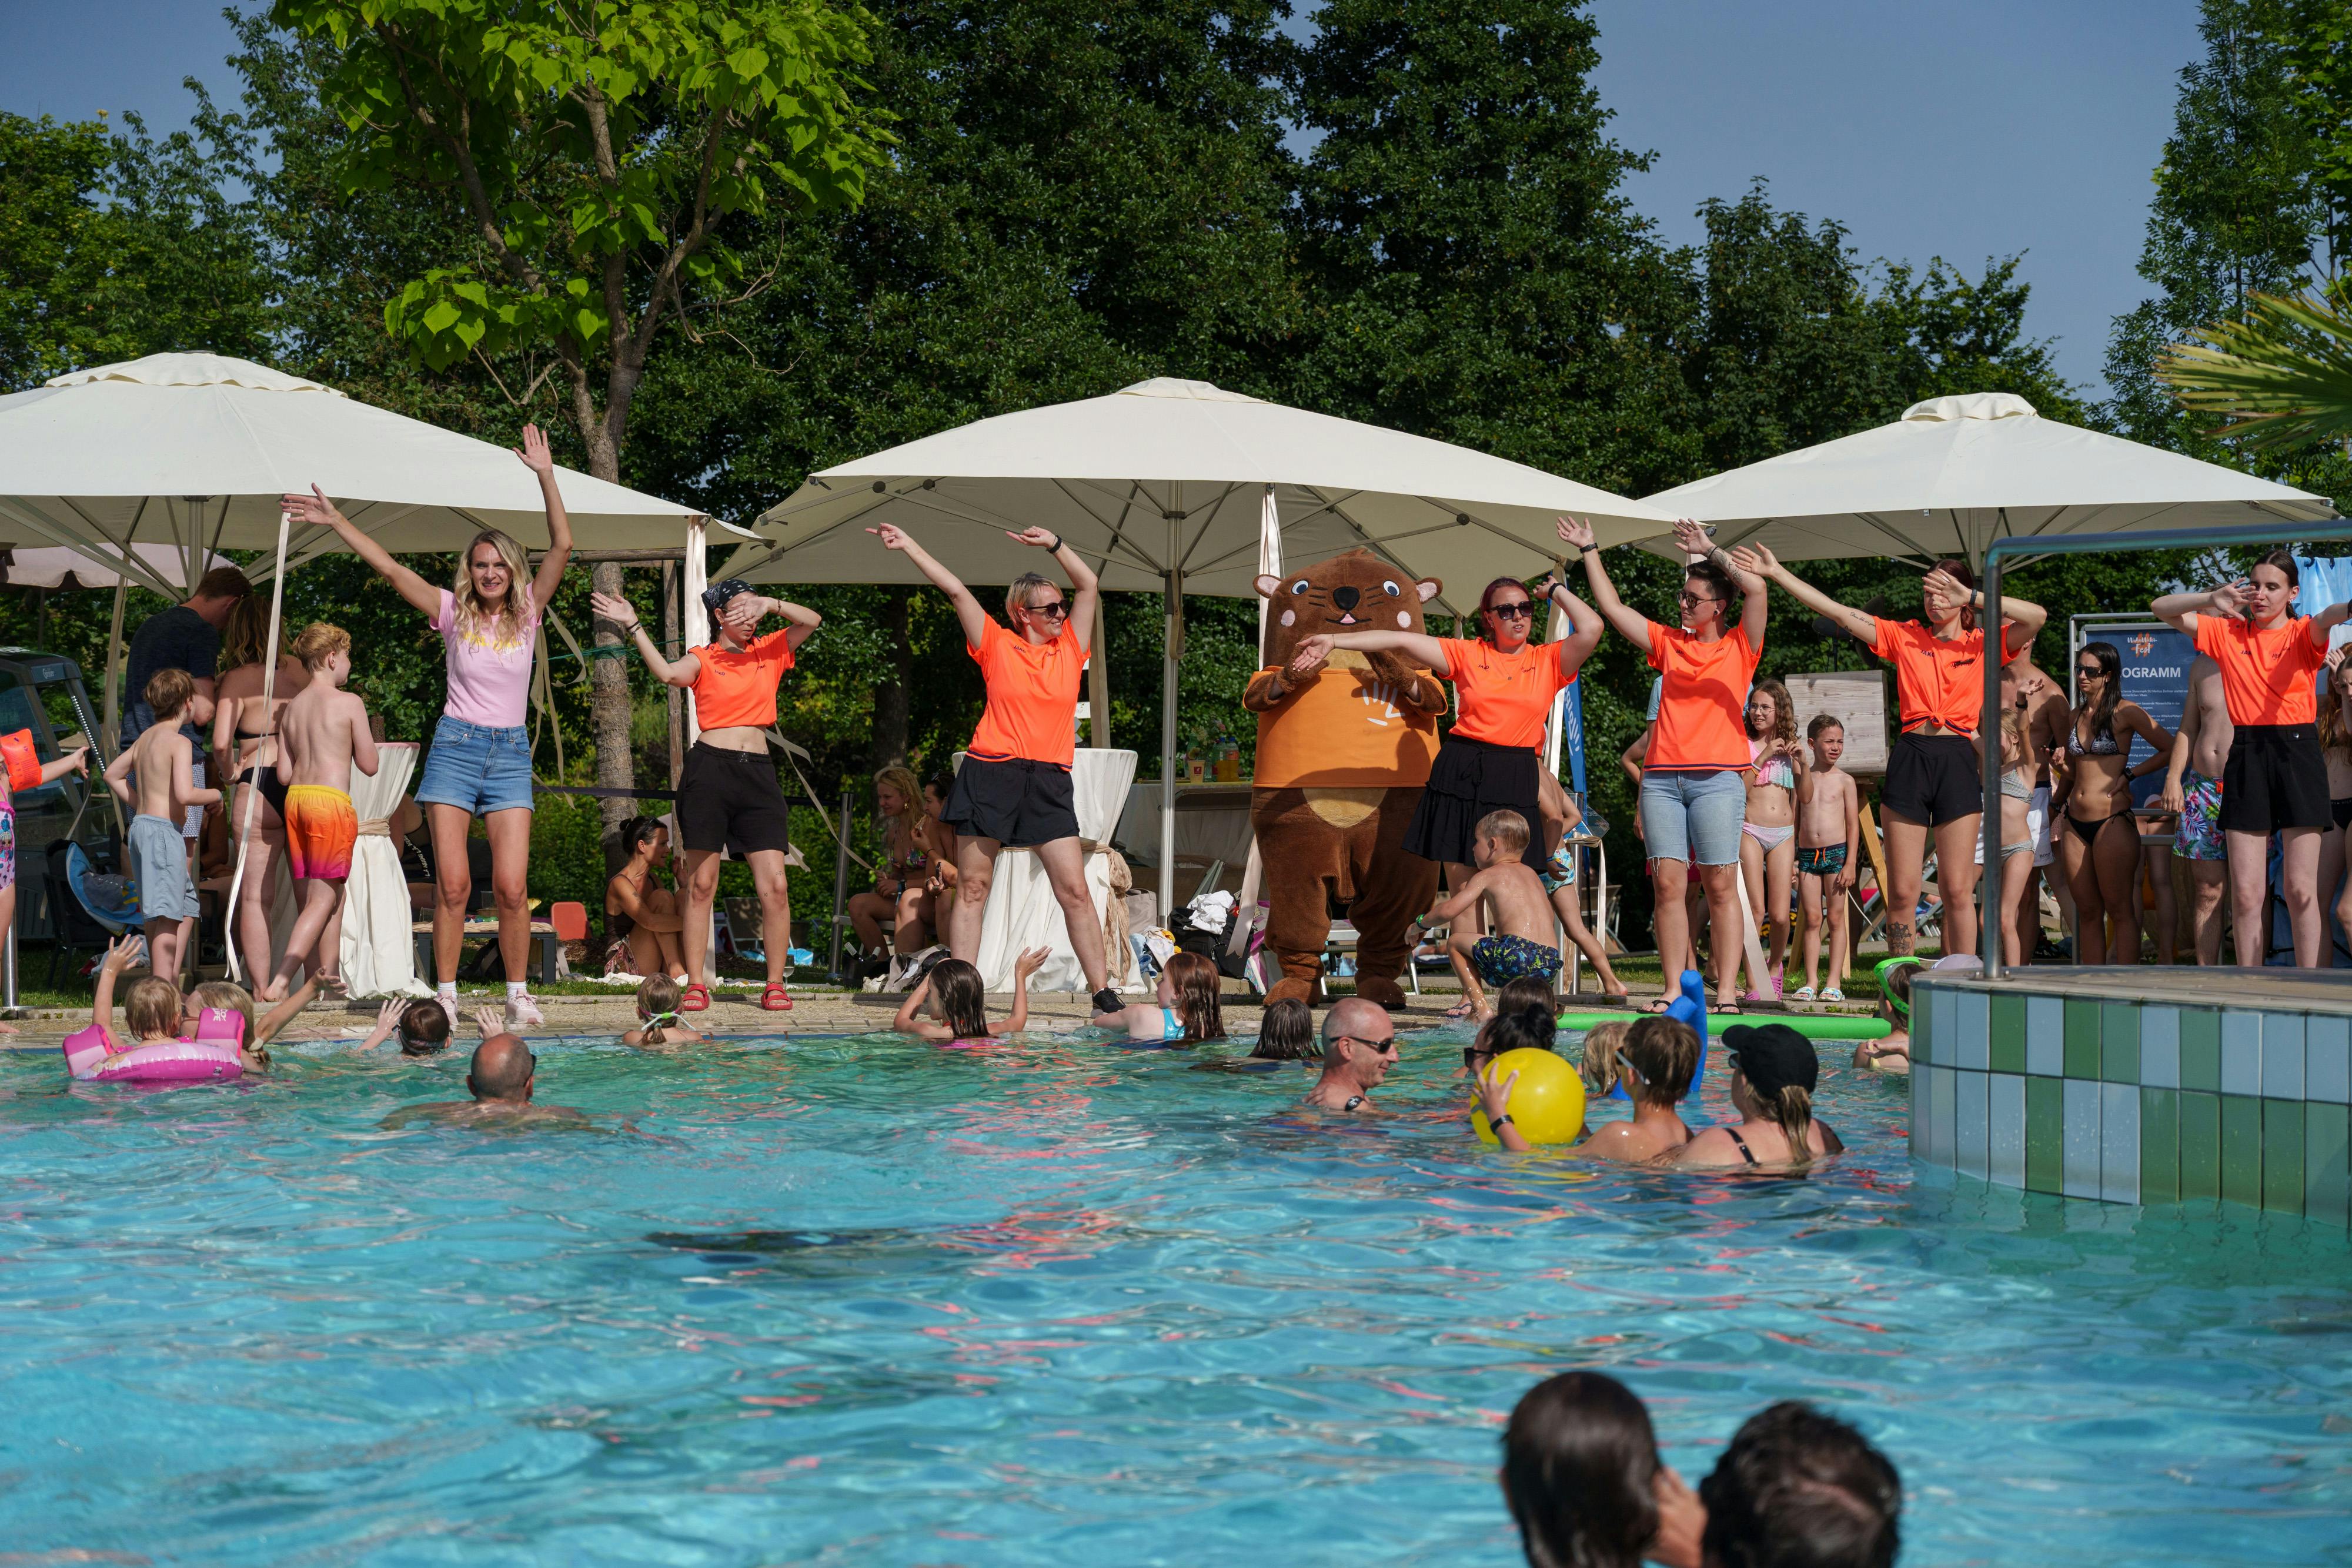 Erlebt den ultimativen Wasserball-Spaß in Loipersdorf! #WeAreWater-Fest - ein Muss für alle Wasserratten.